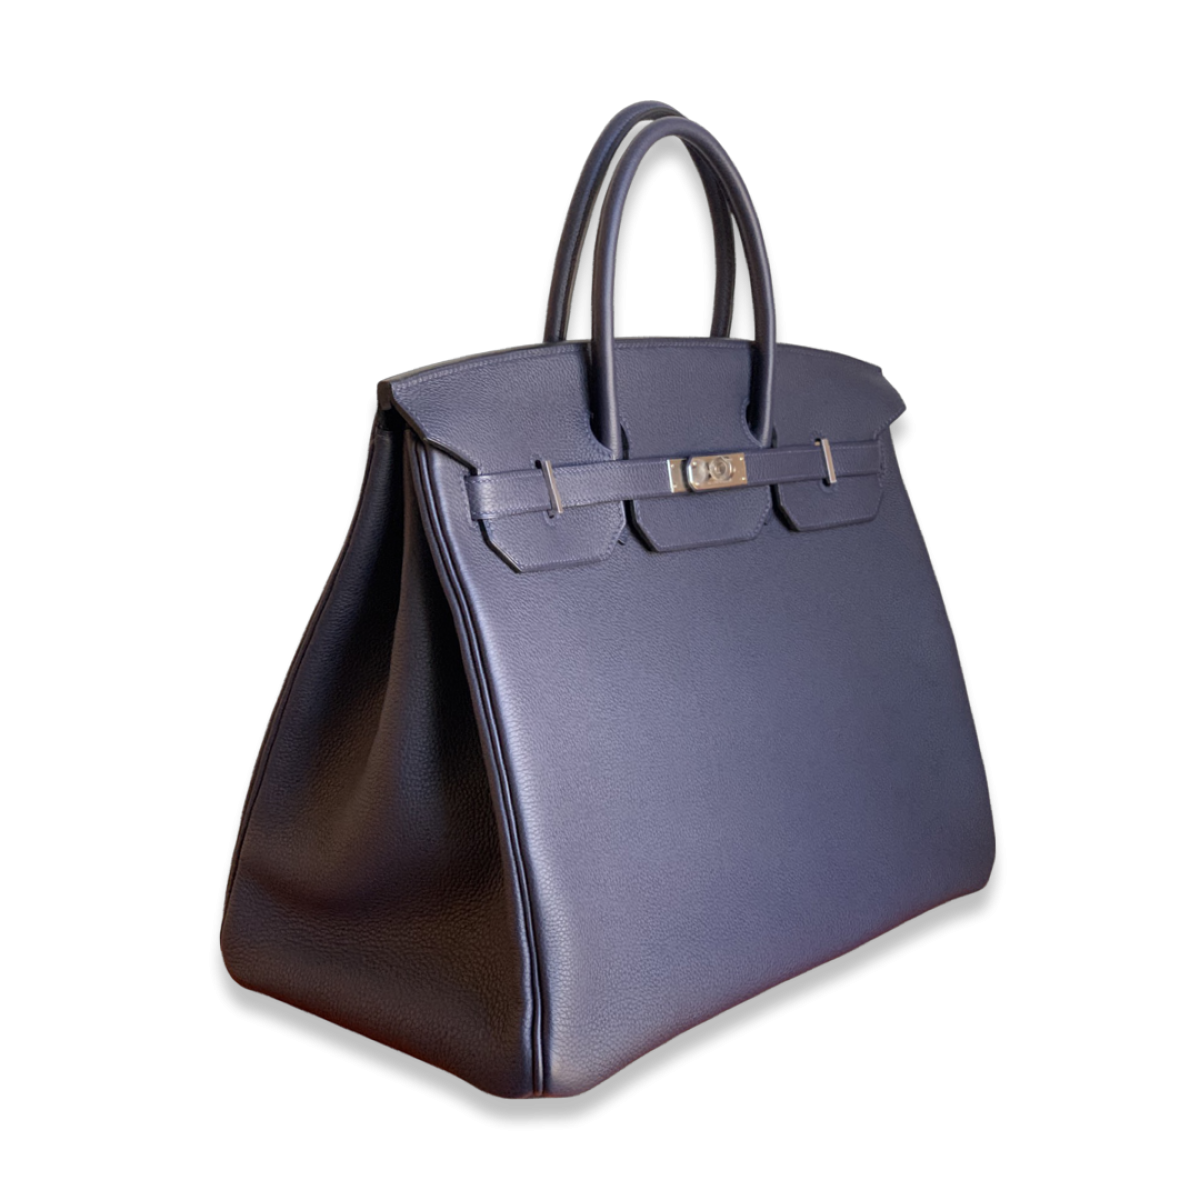 Hermes -- Birkin Officier 40 cm Limited Edition, Blue Nuit Togo Leather